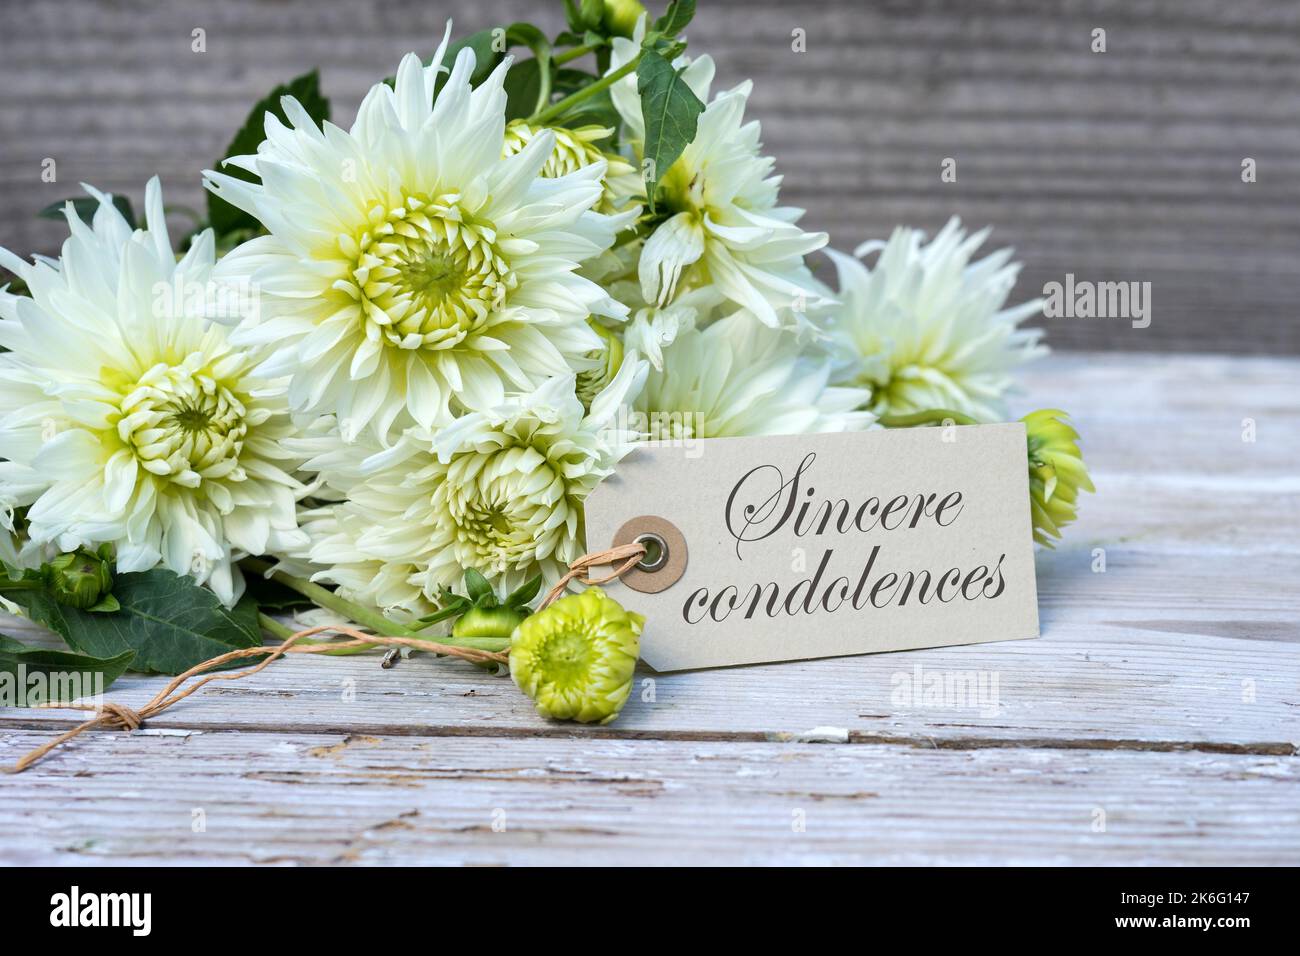 Scheda di simpatia con dahlias bianco e testo in inglese: Sincere condoglianze Foto Stock